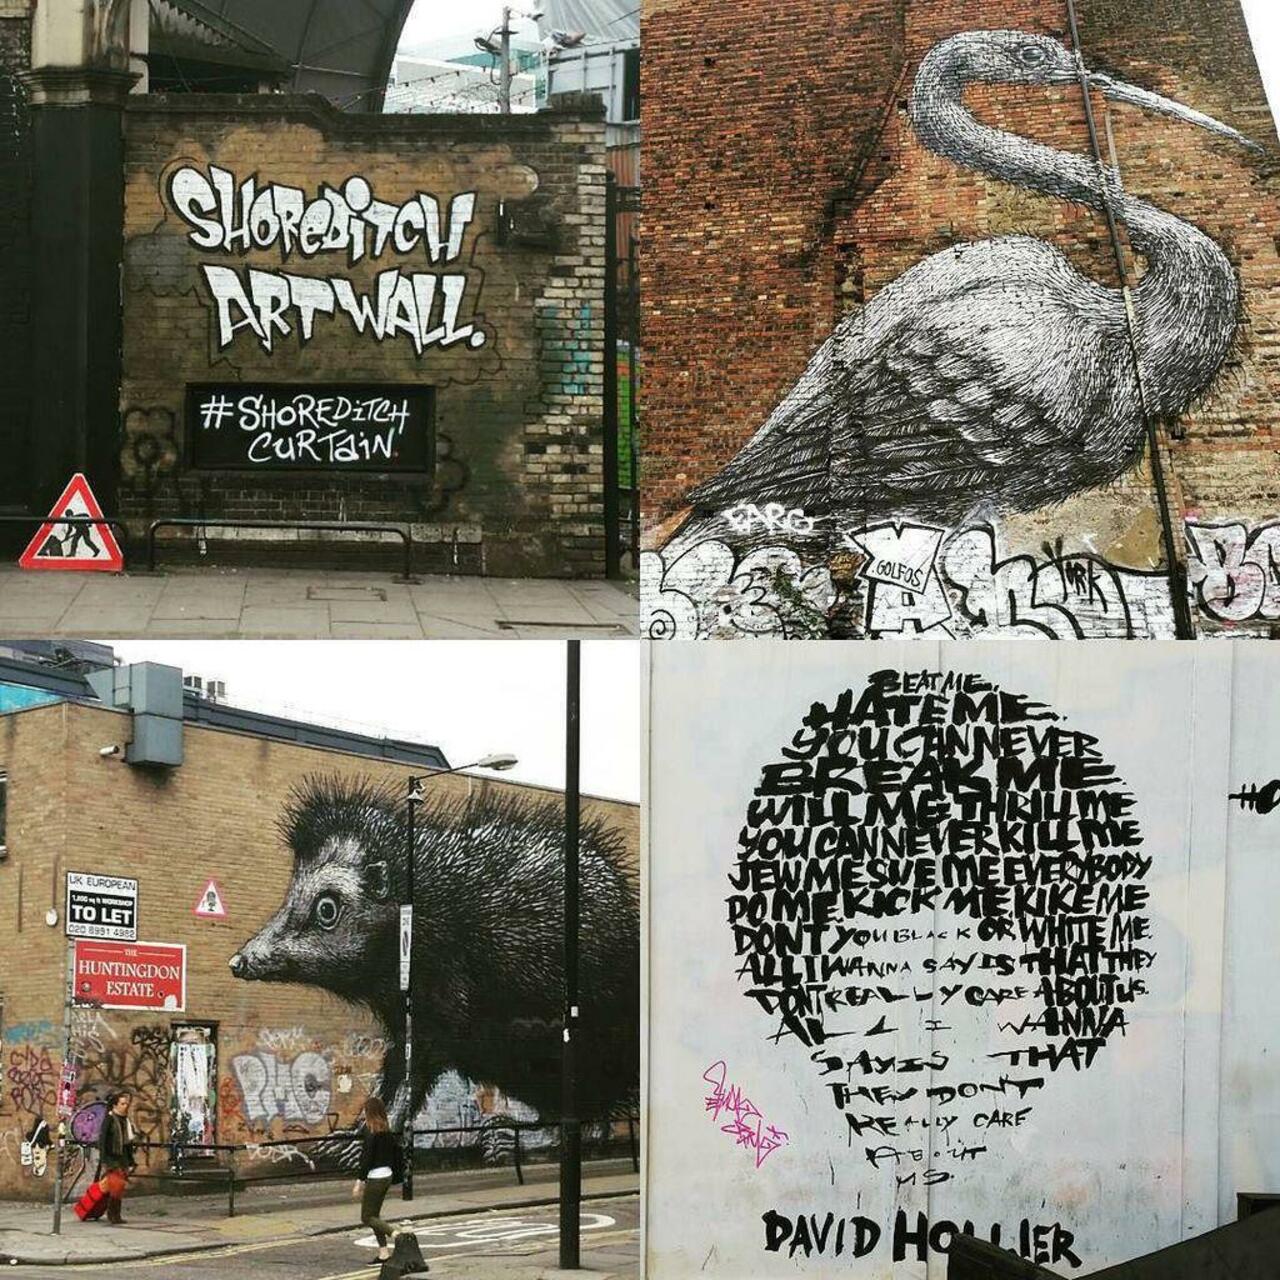 "@EastGraffiti: RT: @StArtEverywhere
#alternativelondon #london #streetart #streetartlondon #graffiti #eastlondon by http://t.co/aPEnpTEWKS"